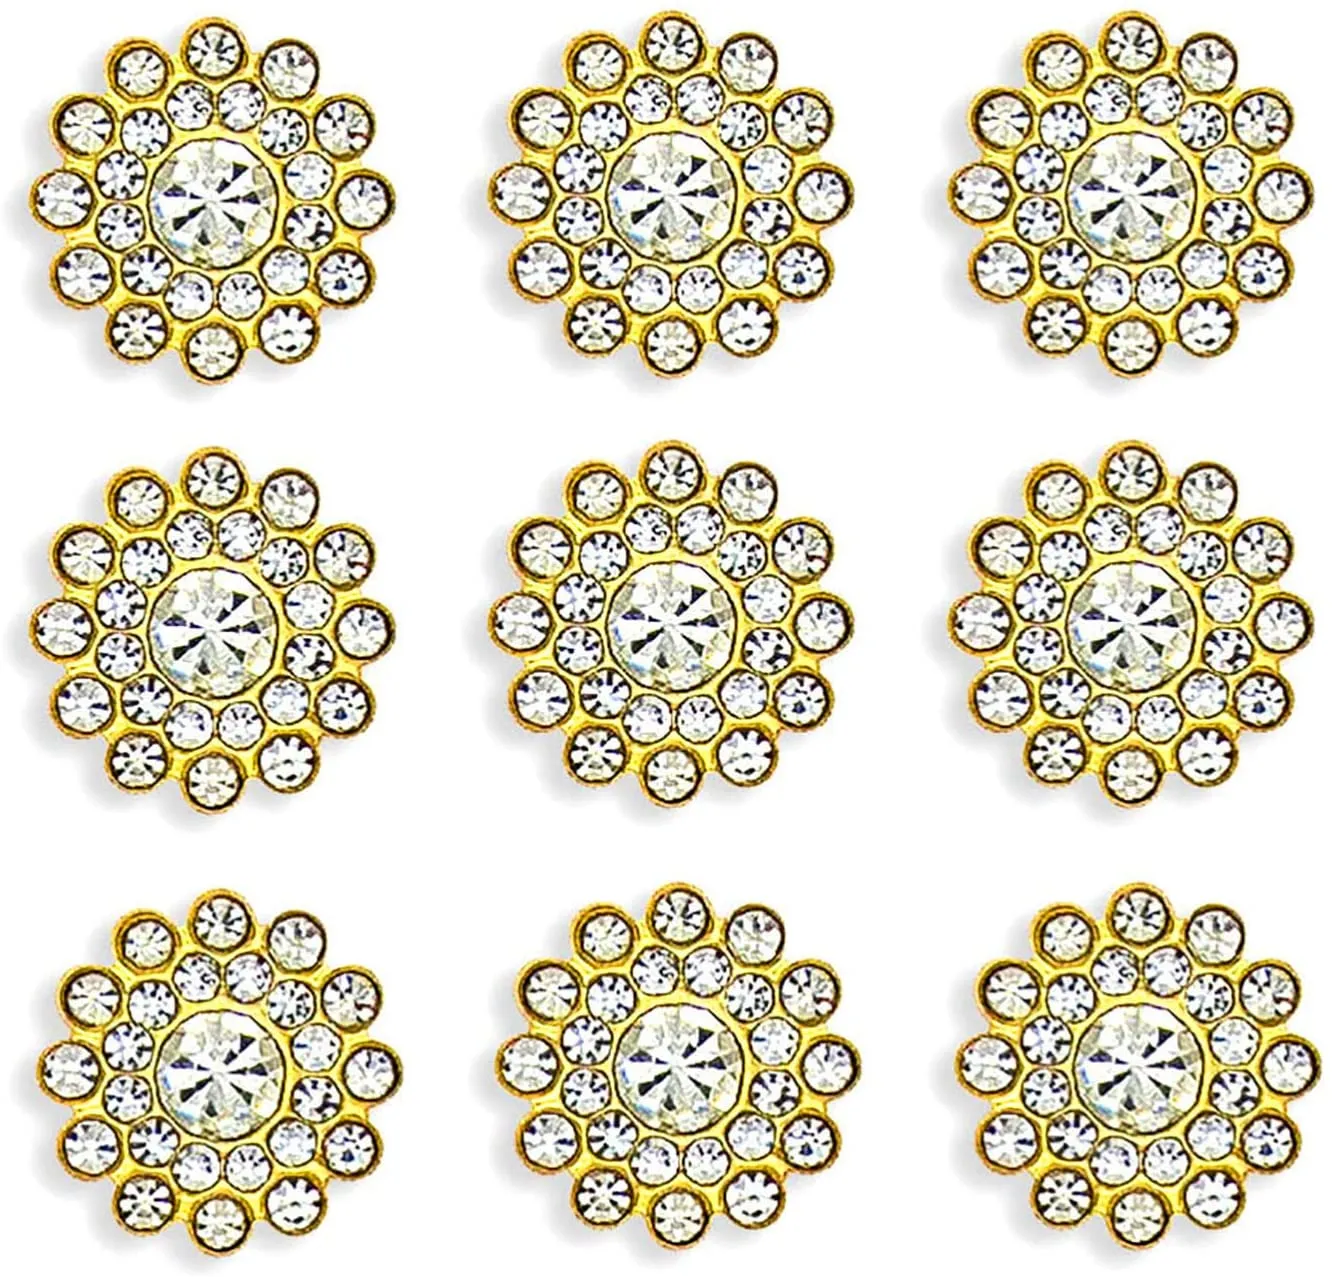 50 stuks Strass Versieringen Kristal Decoratie Broche Knop Plaksteen DIY Craft voor Bloem Hoofdband Jurk Accessoire 14mm Sil2150650